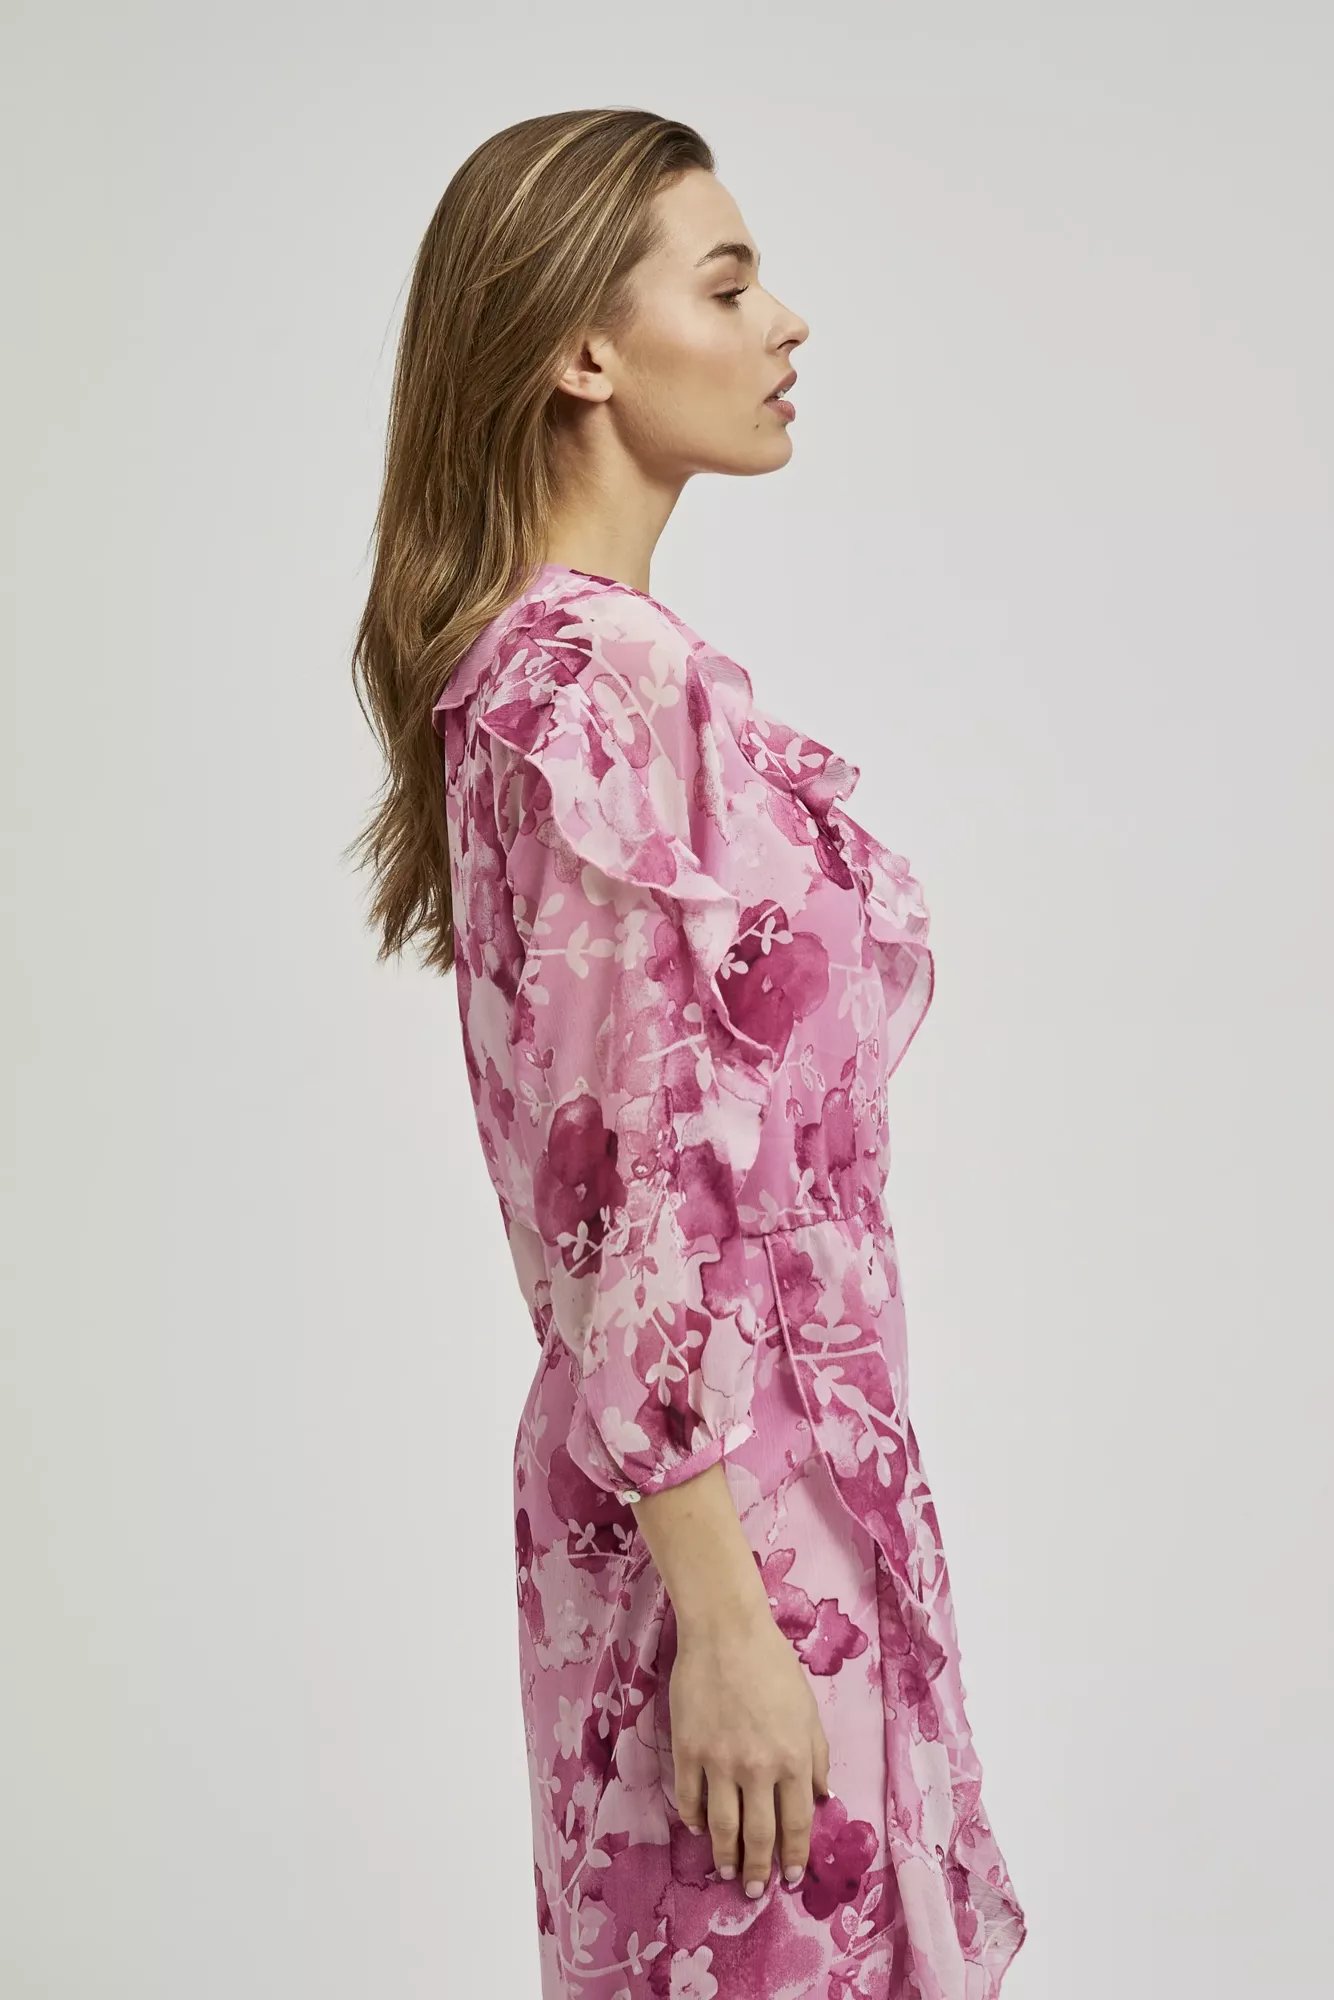 Women's patterned dress MOODO - pink